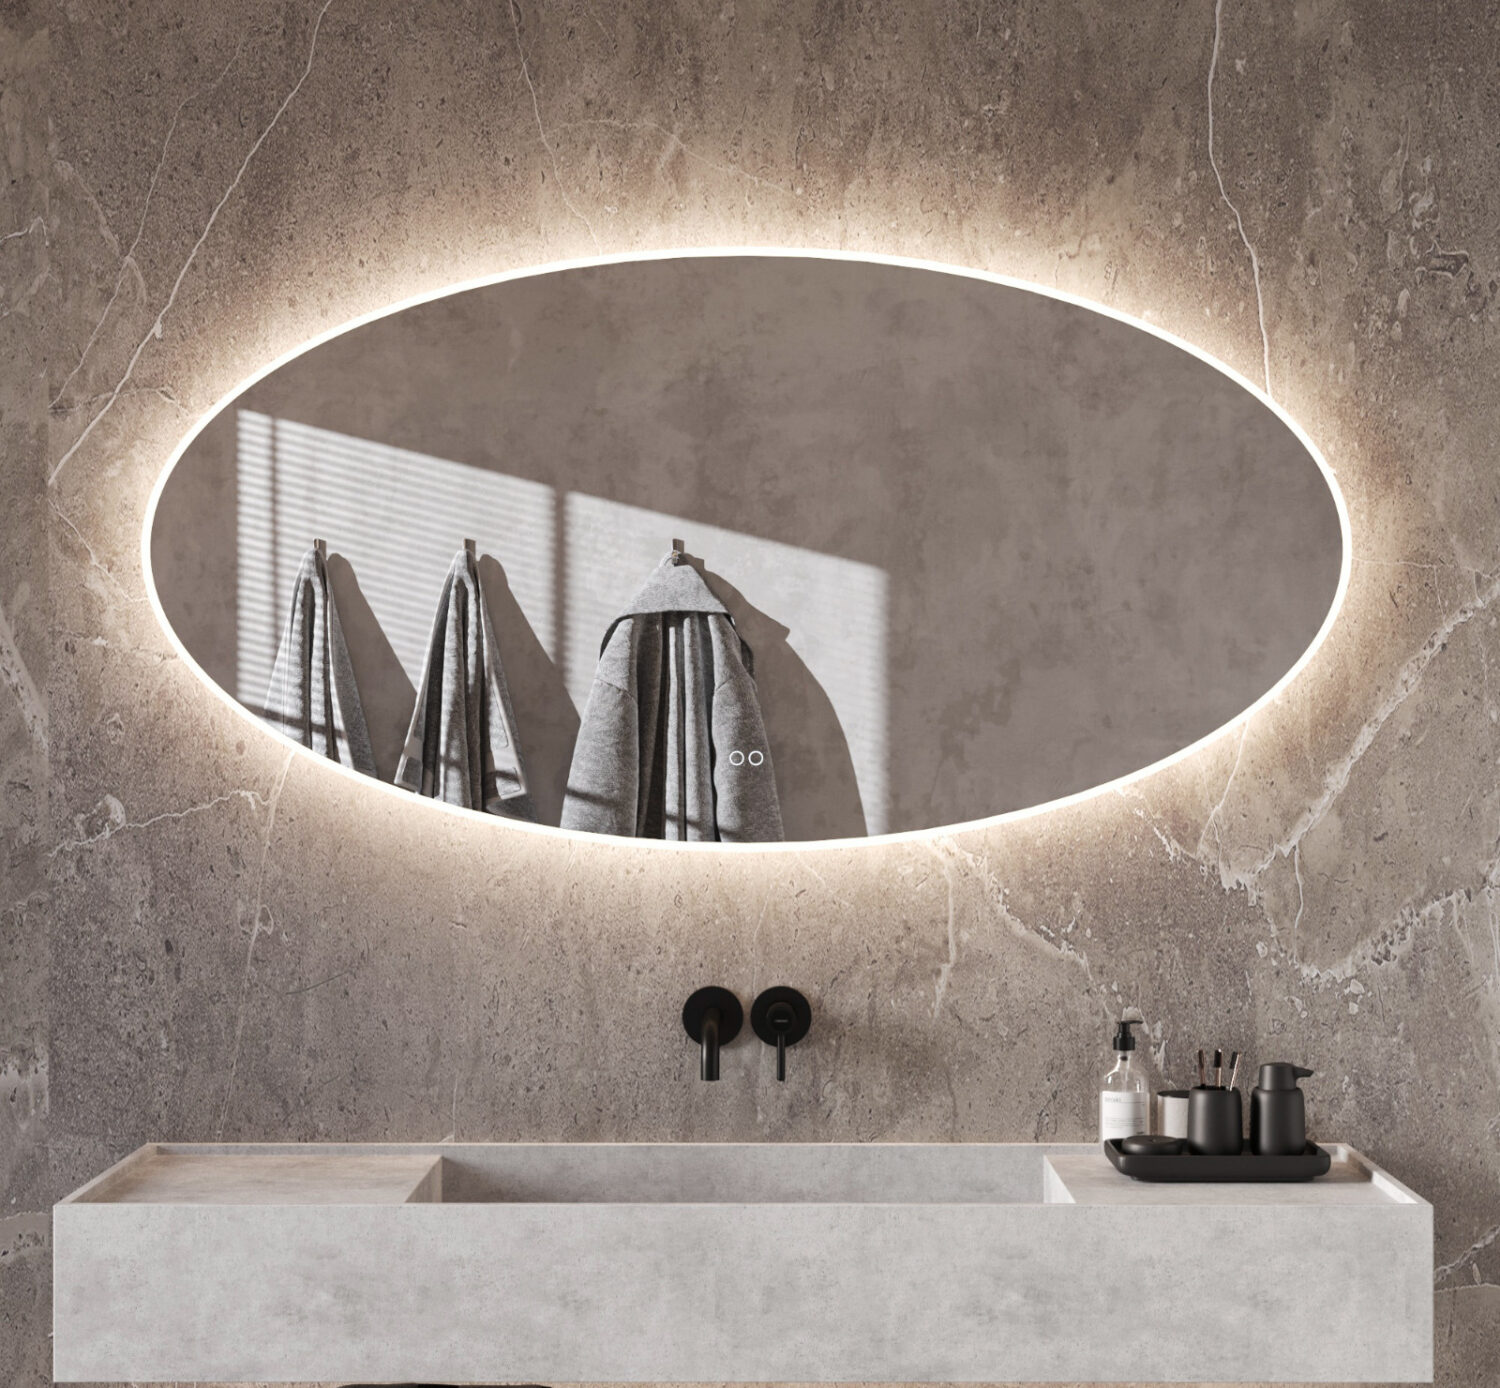 Stijlvolle 160 cm brede ovale badkamer spiegel, uitgevoerd met verlichting en spiegelverwarming